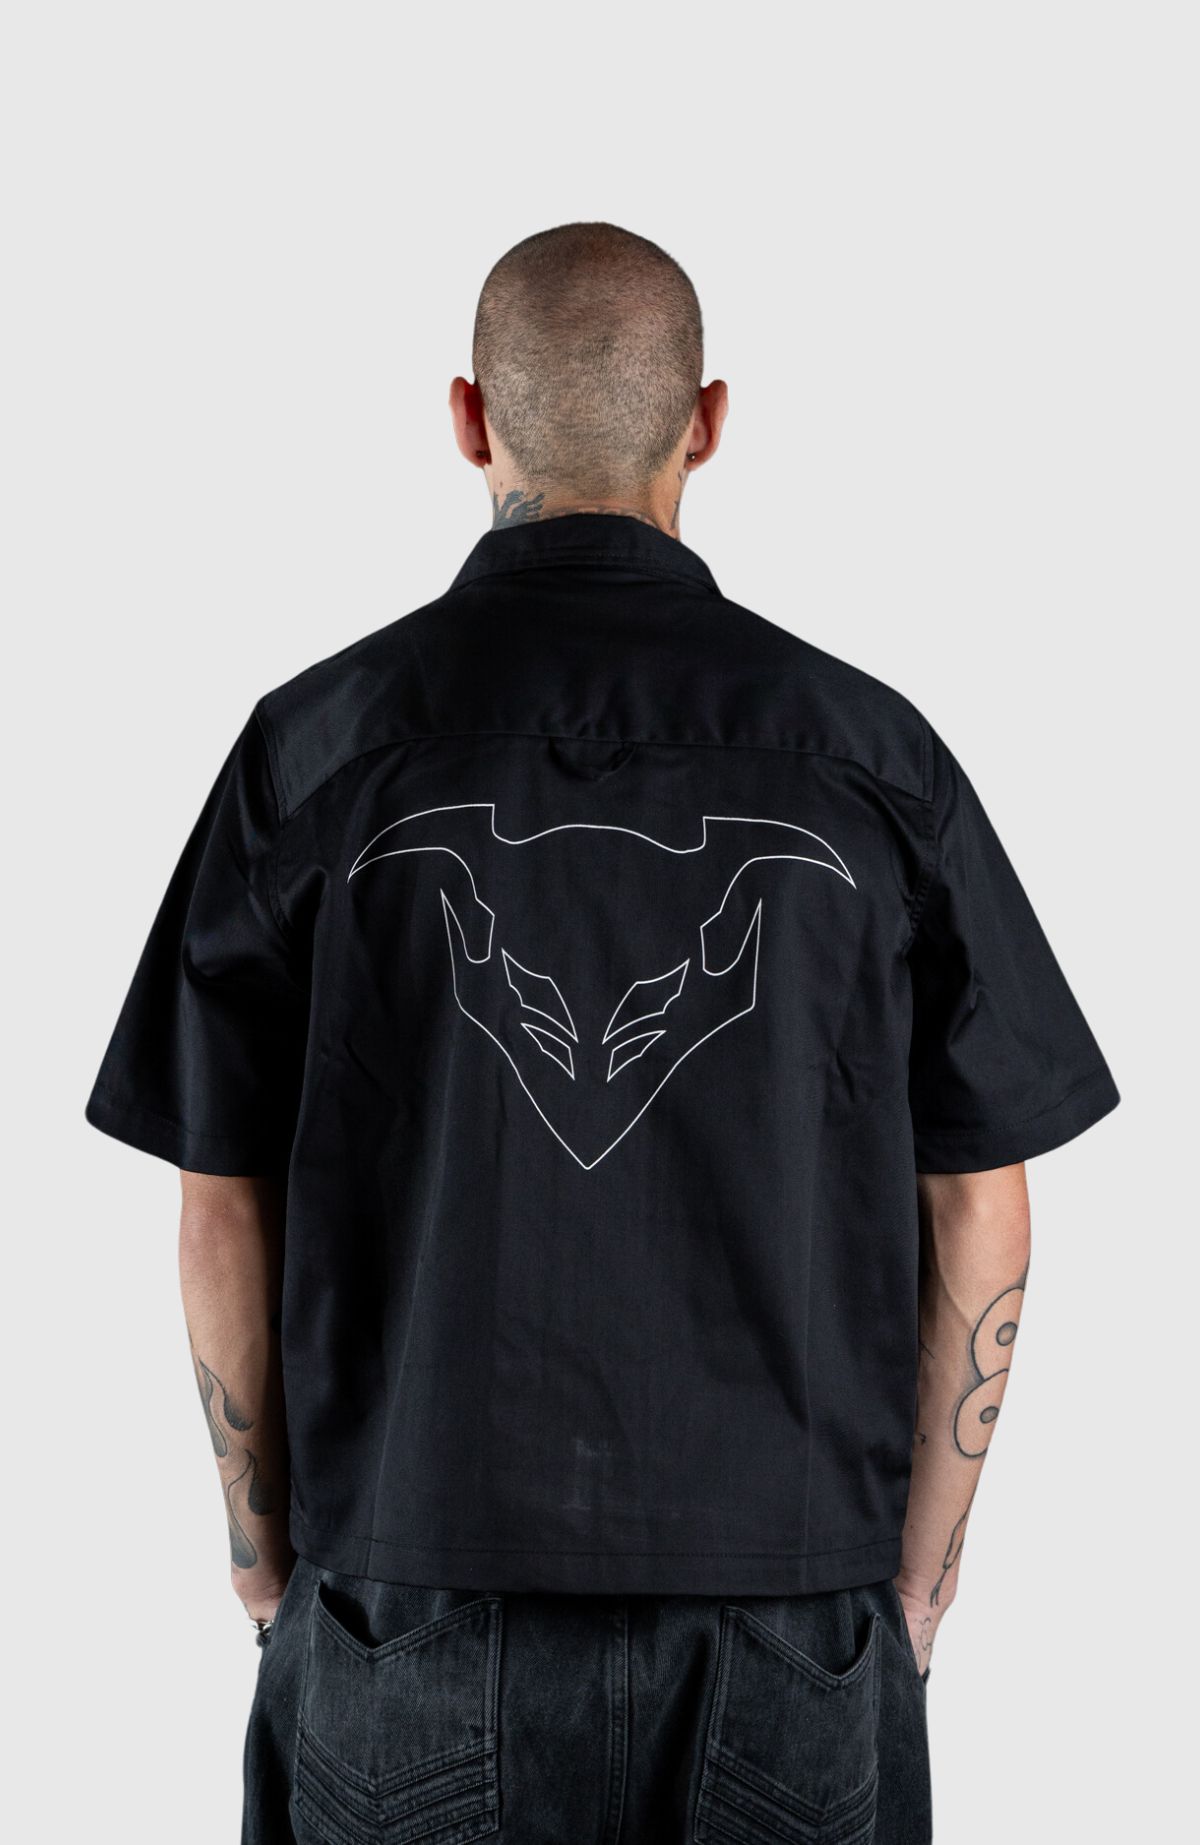 Event Horizon Shirt